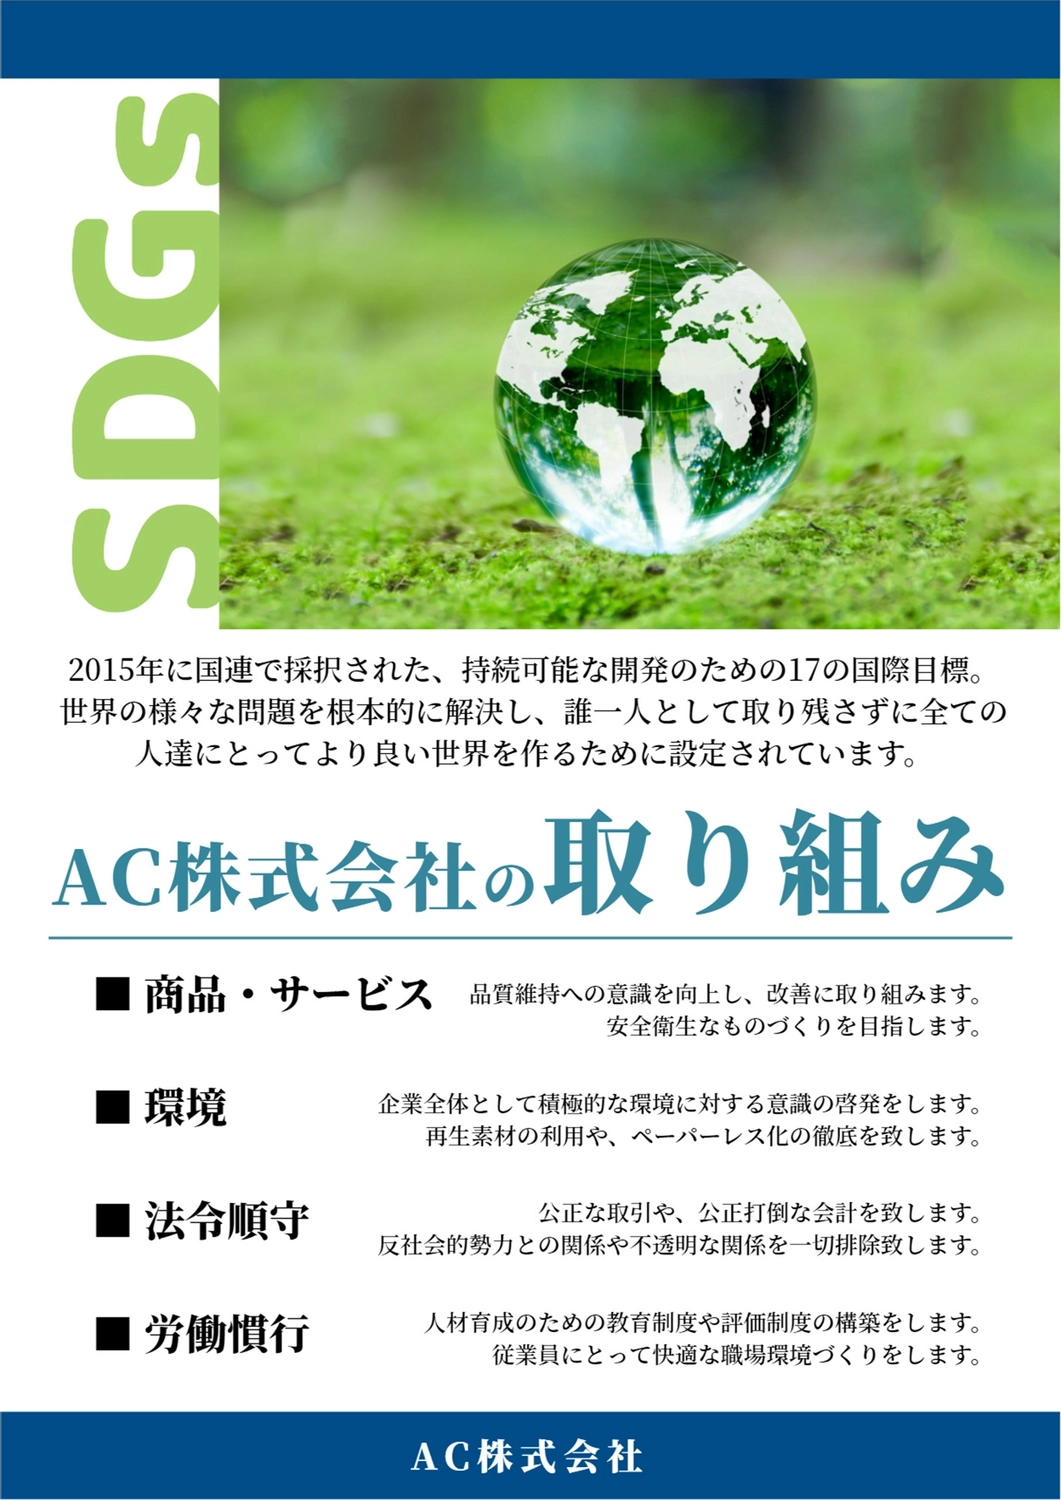 透明な地球のSDGsポスター, bóng thủy tinh, sinh thái học, môi trường, Áp phích mẫu